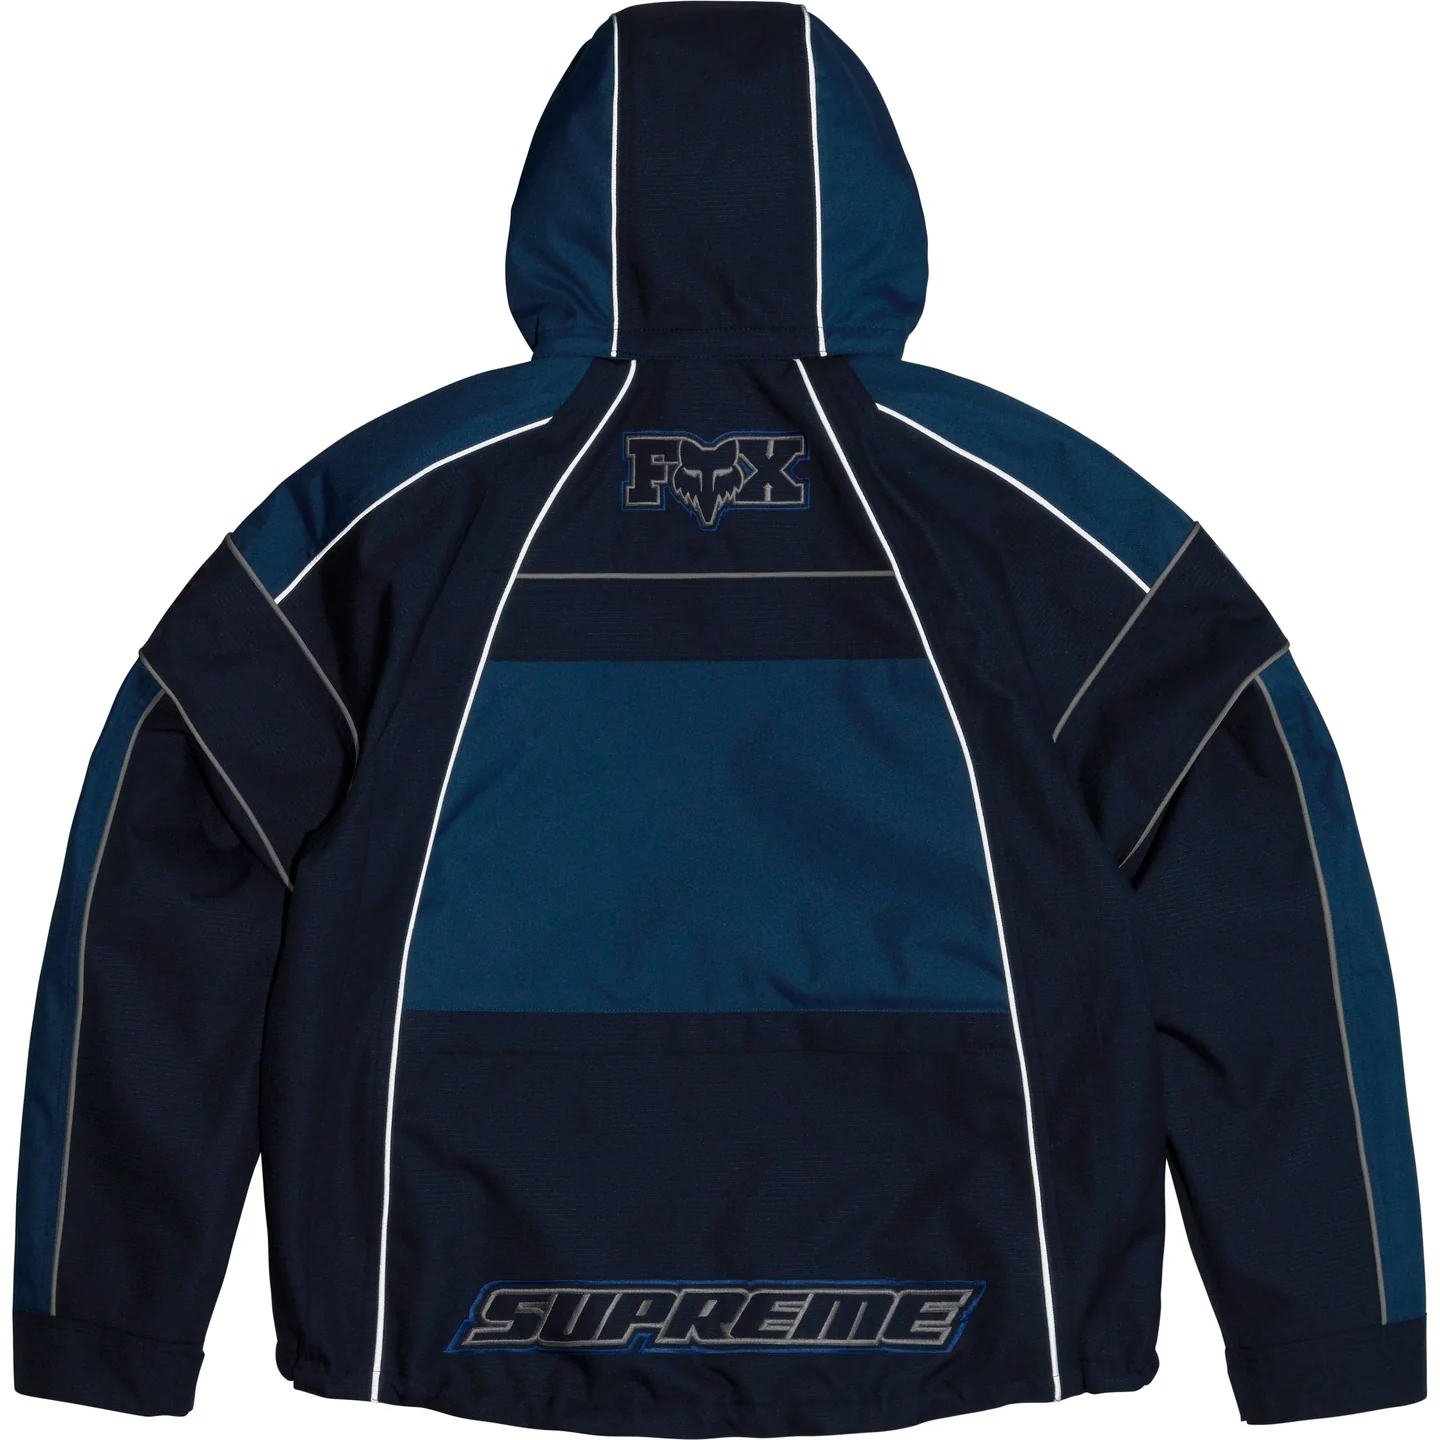 Supreme Supreme®/Fox Racing® Jacket